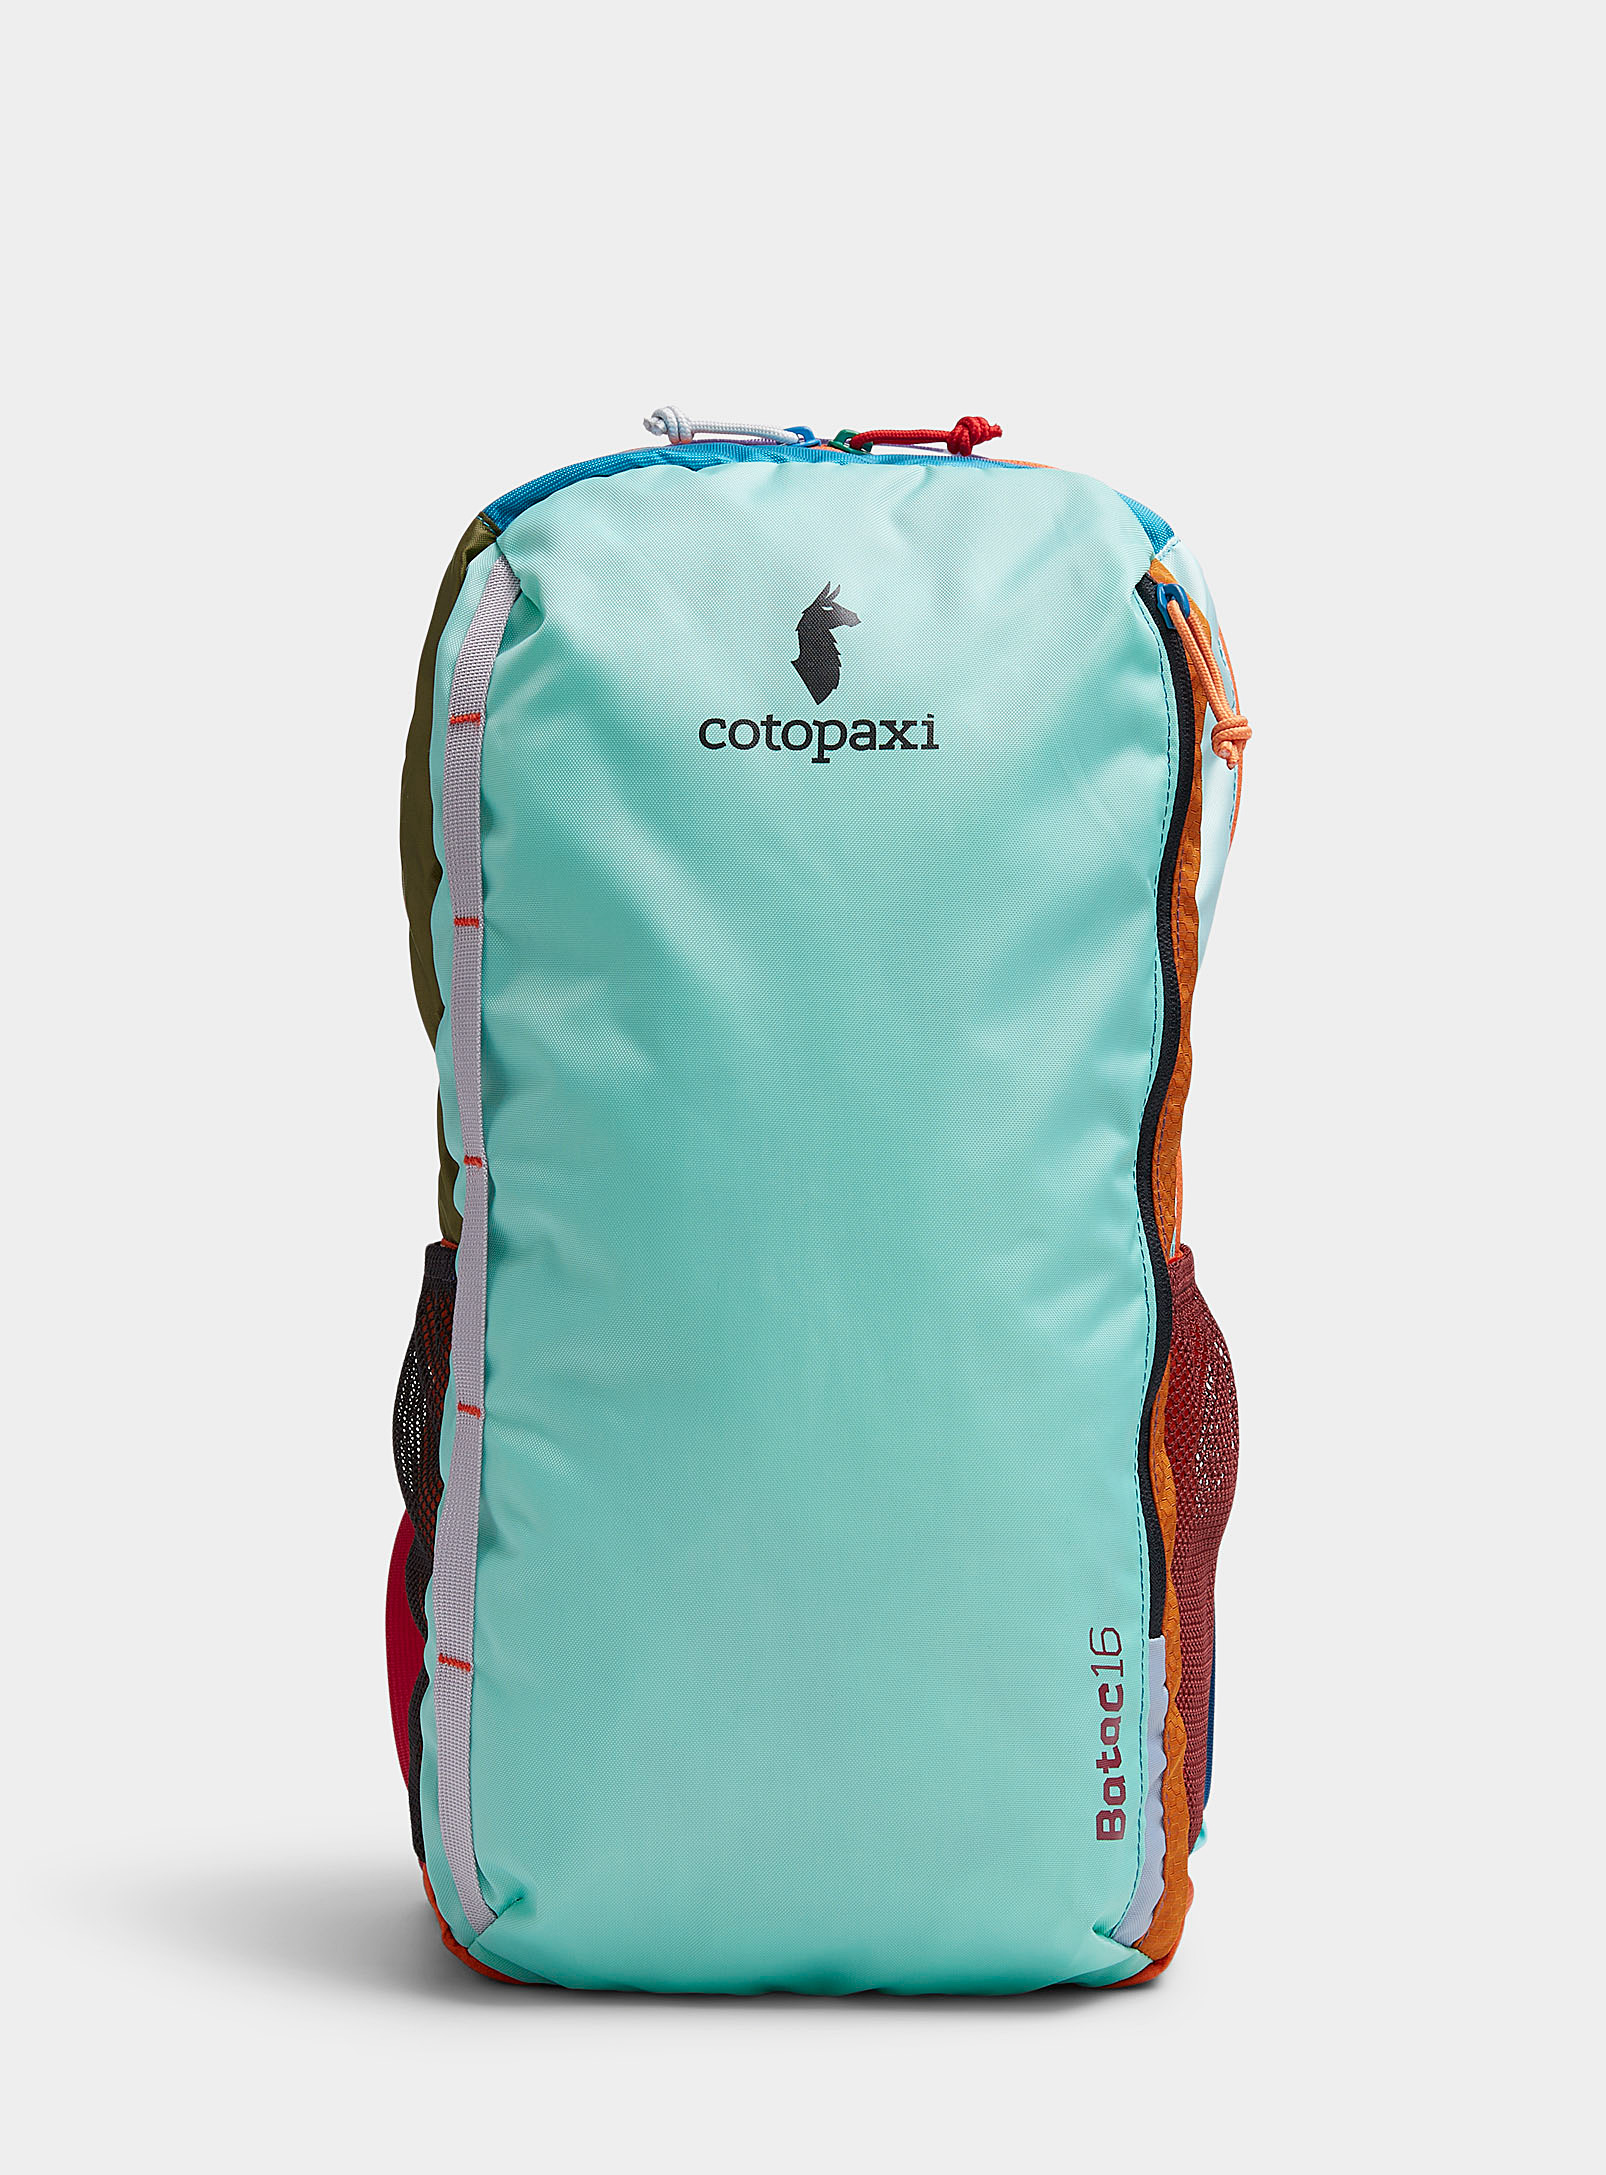 Cotopaxi Batac 16l Backpack In Patterned Blue